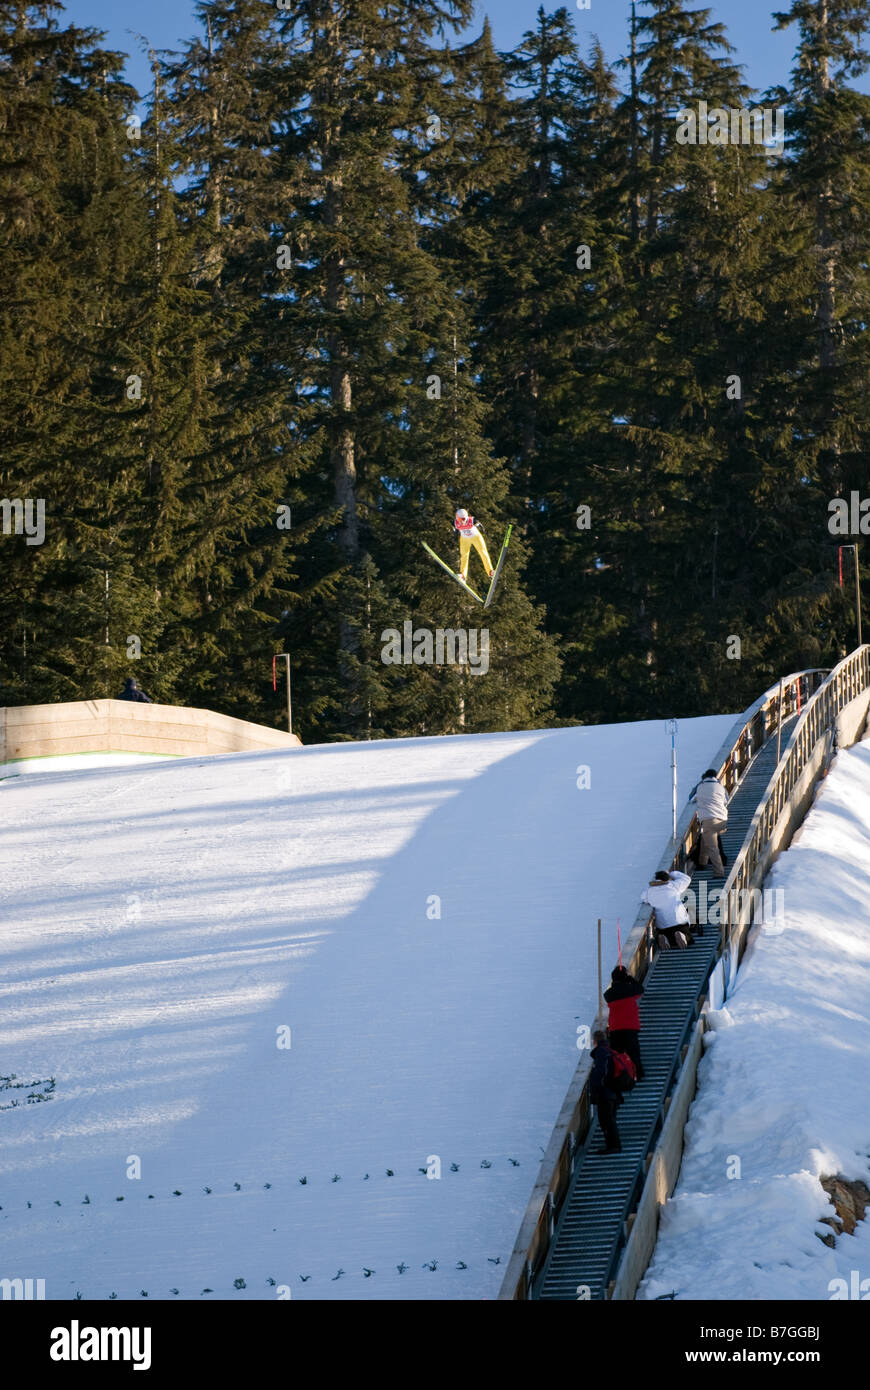 Stephan Hock6 puente de Esquí de Alemania hace un salto en la práctica del deporte Nórdico Whistler-Blackcomb Ski Jump instalaciones. Foto de stock